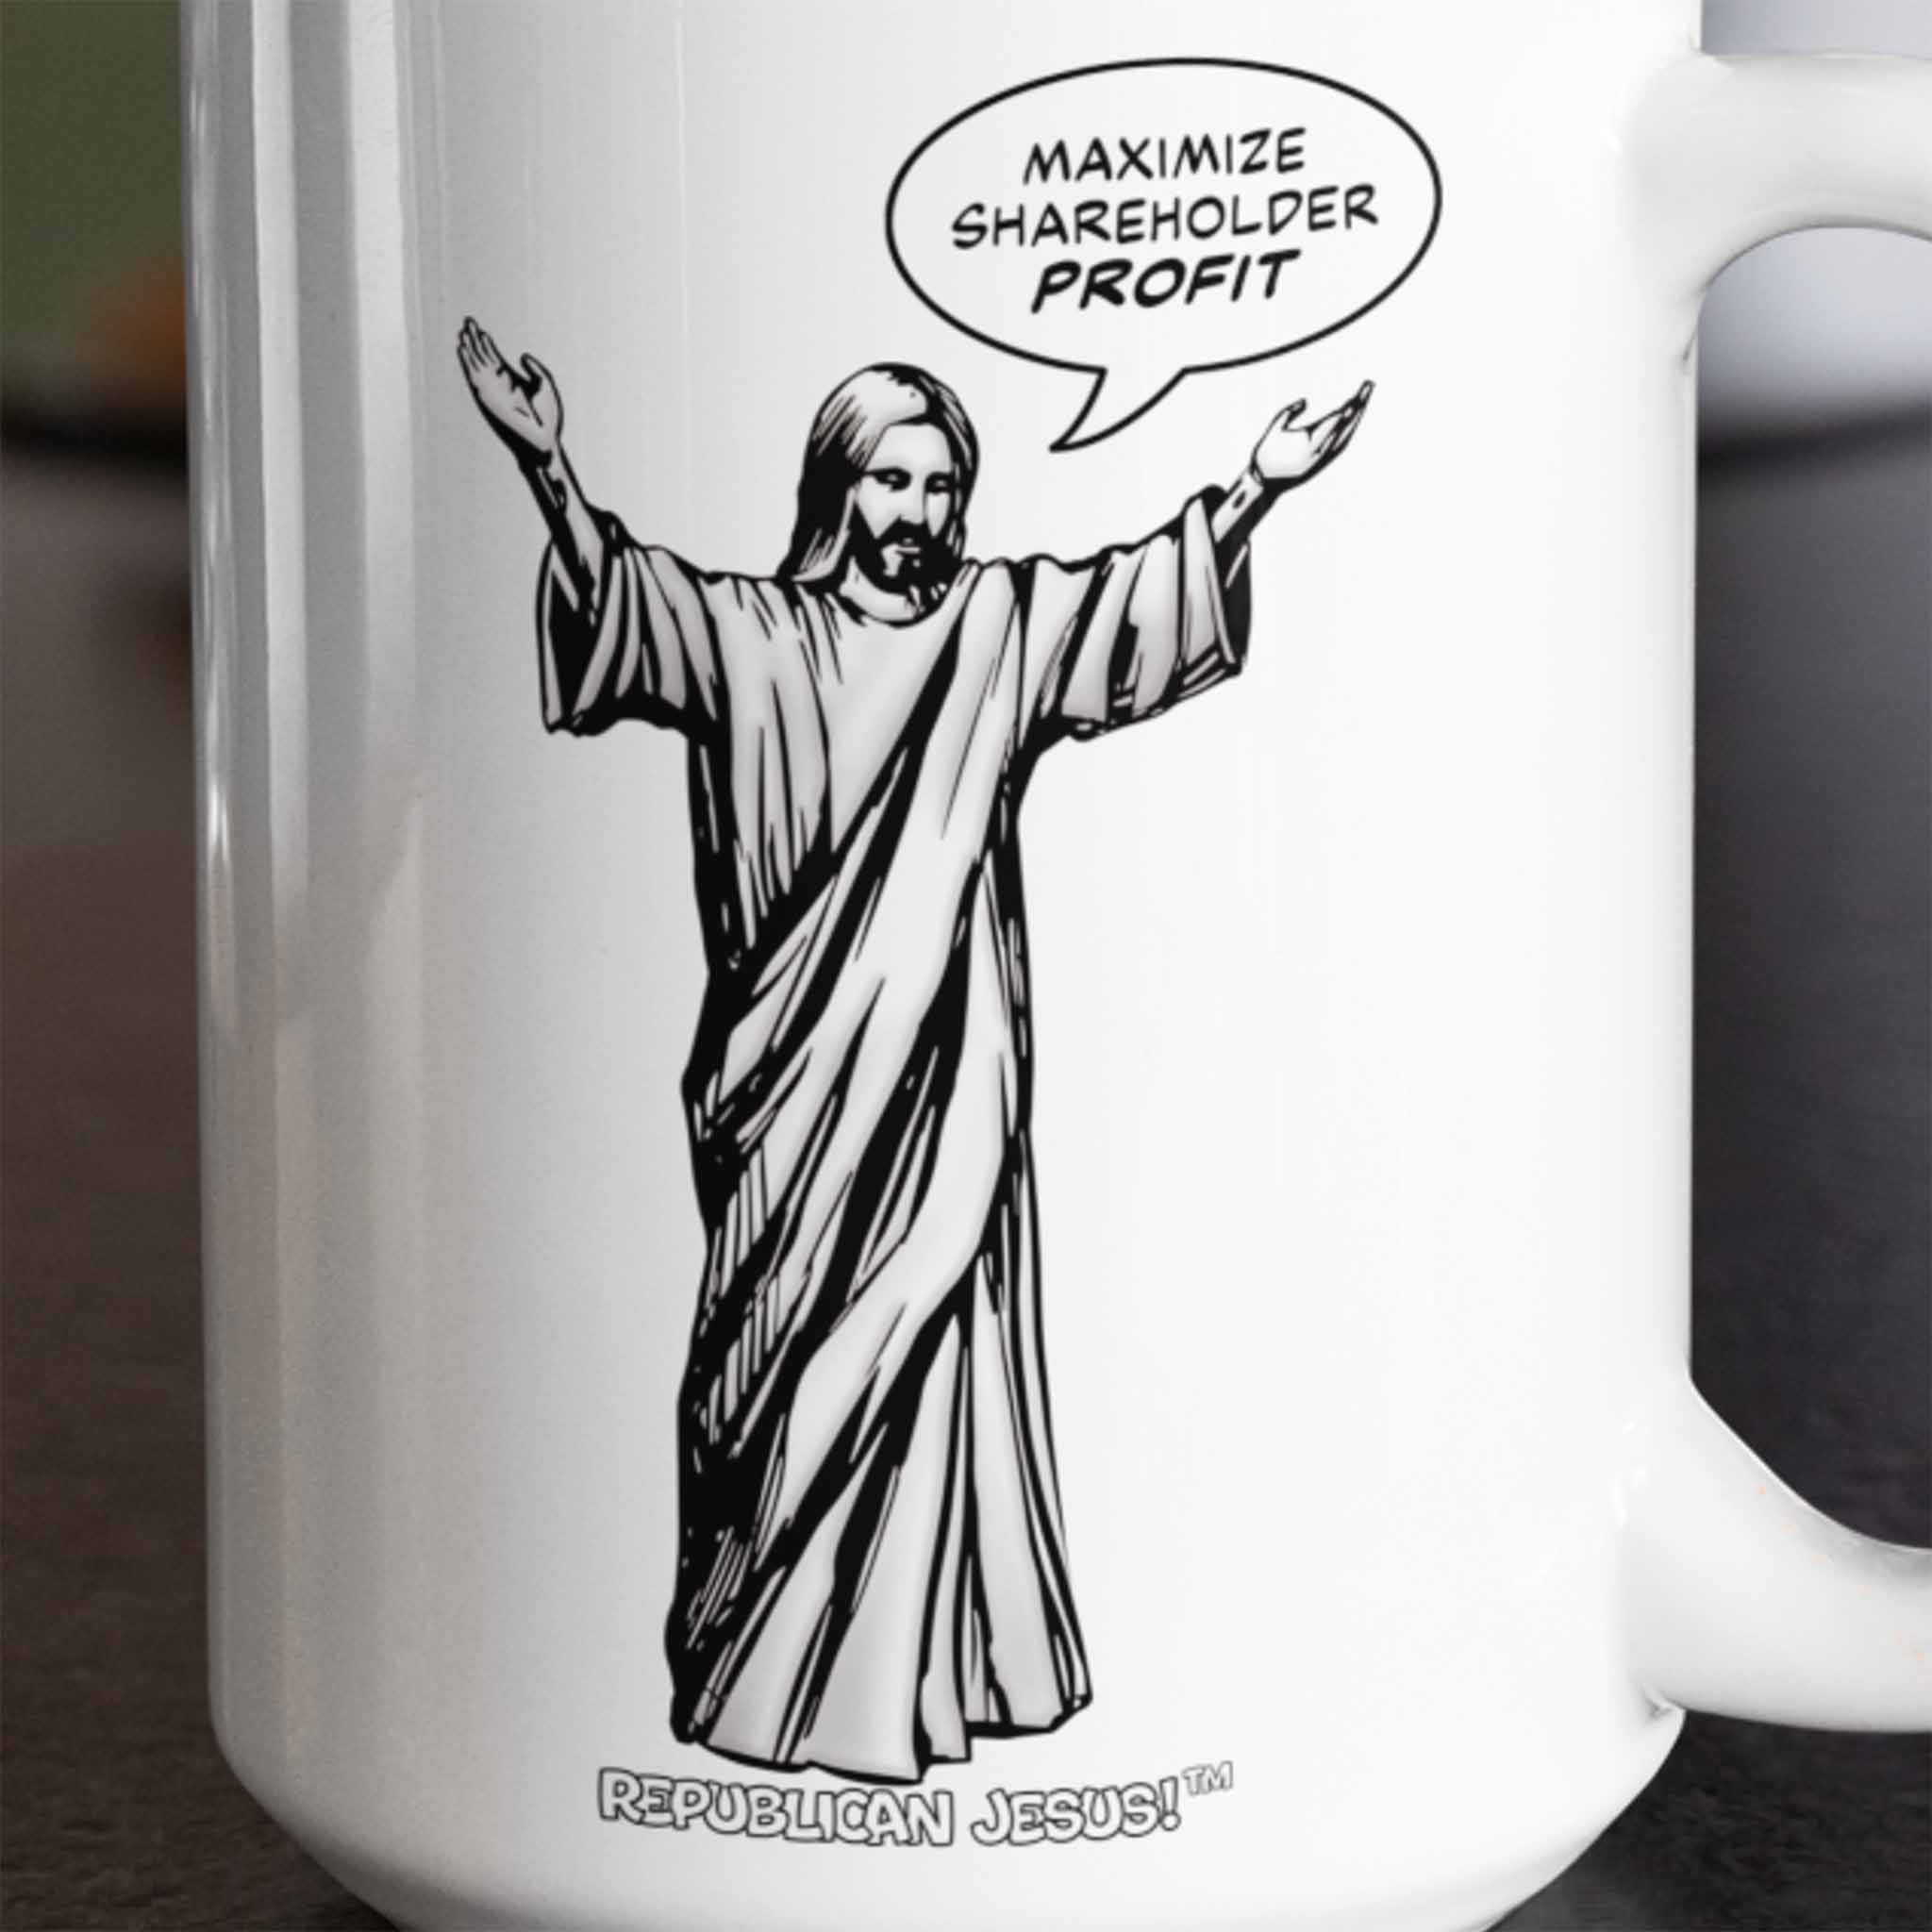 Republican Jesus!™ — "Maximize" 15oz mug